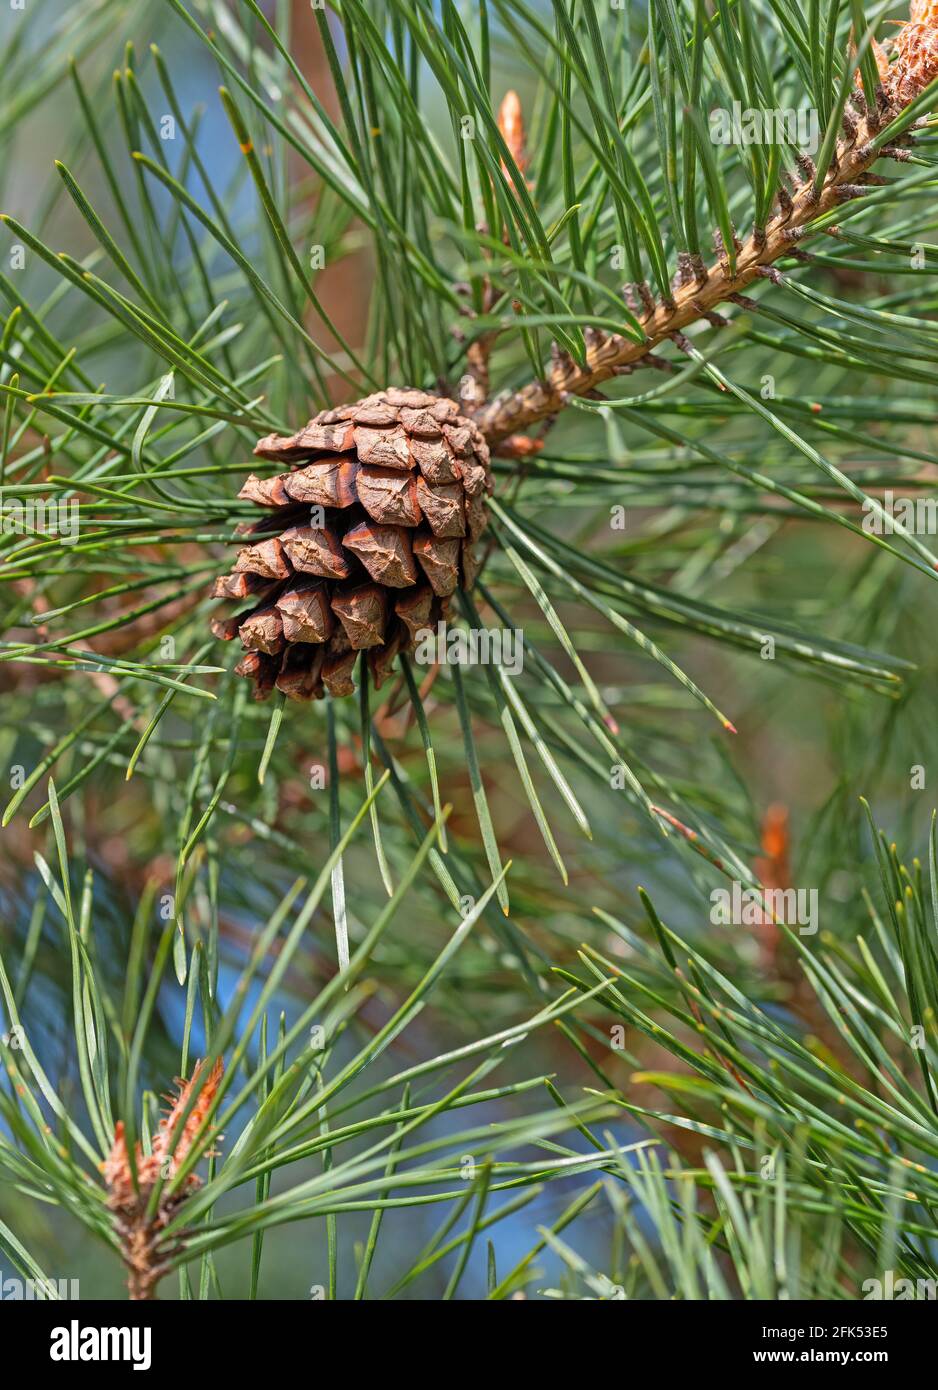 Pine, Pinus, with pine cones Stock Photo